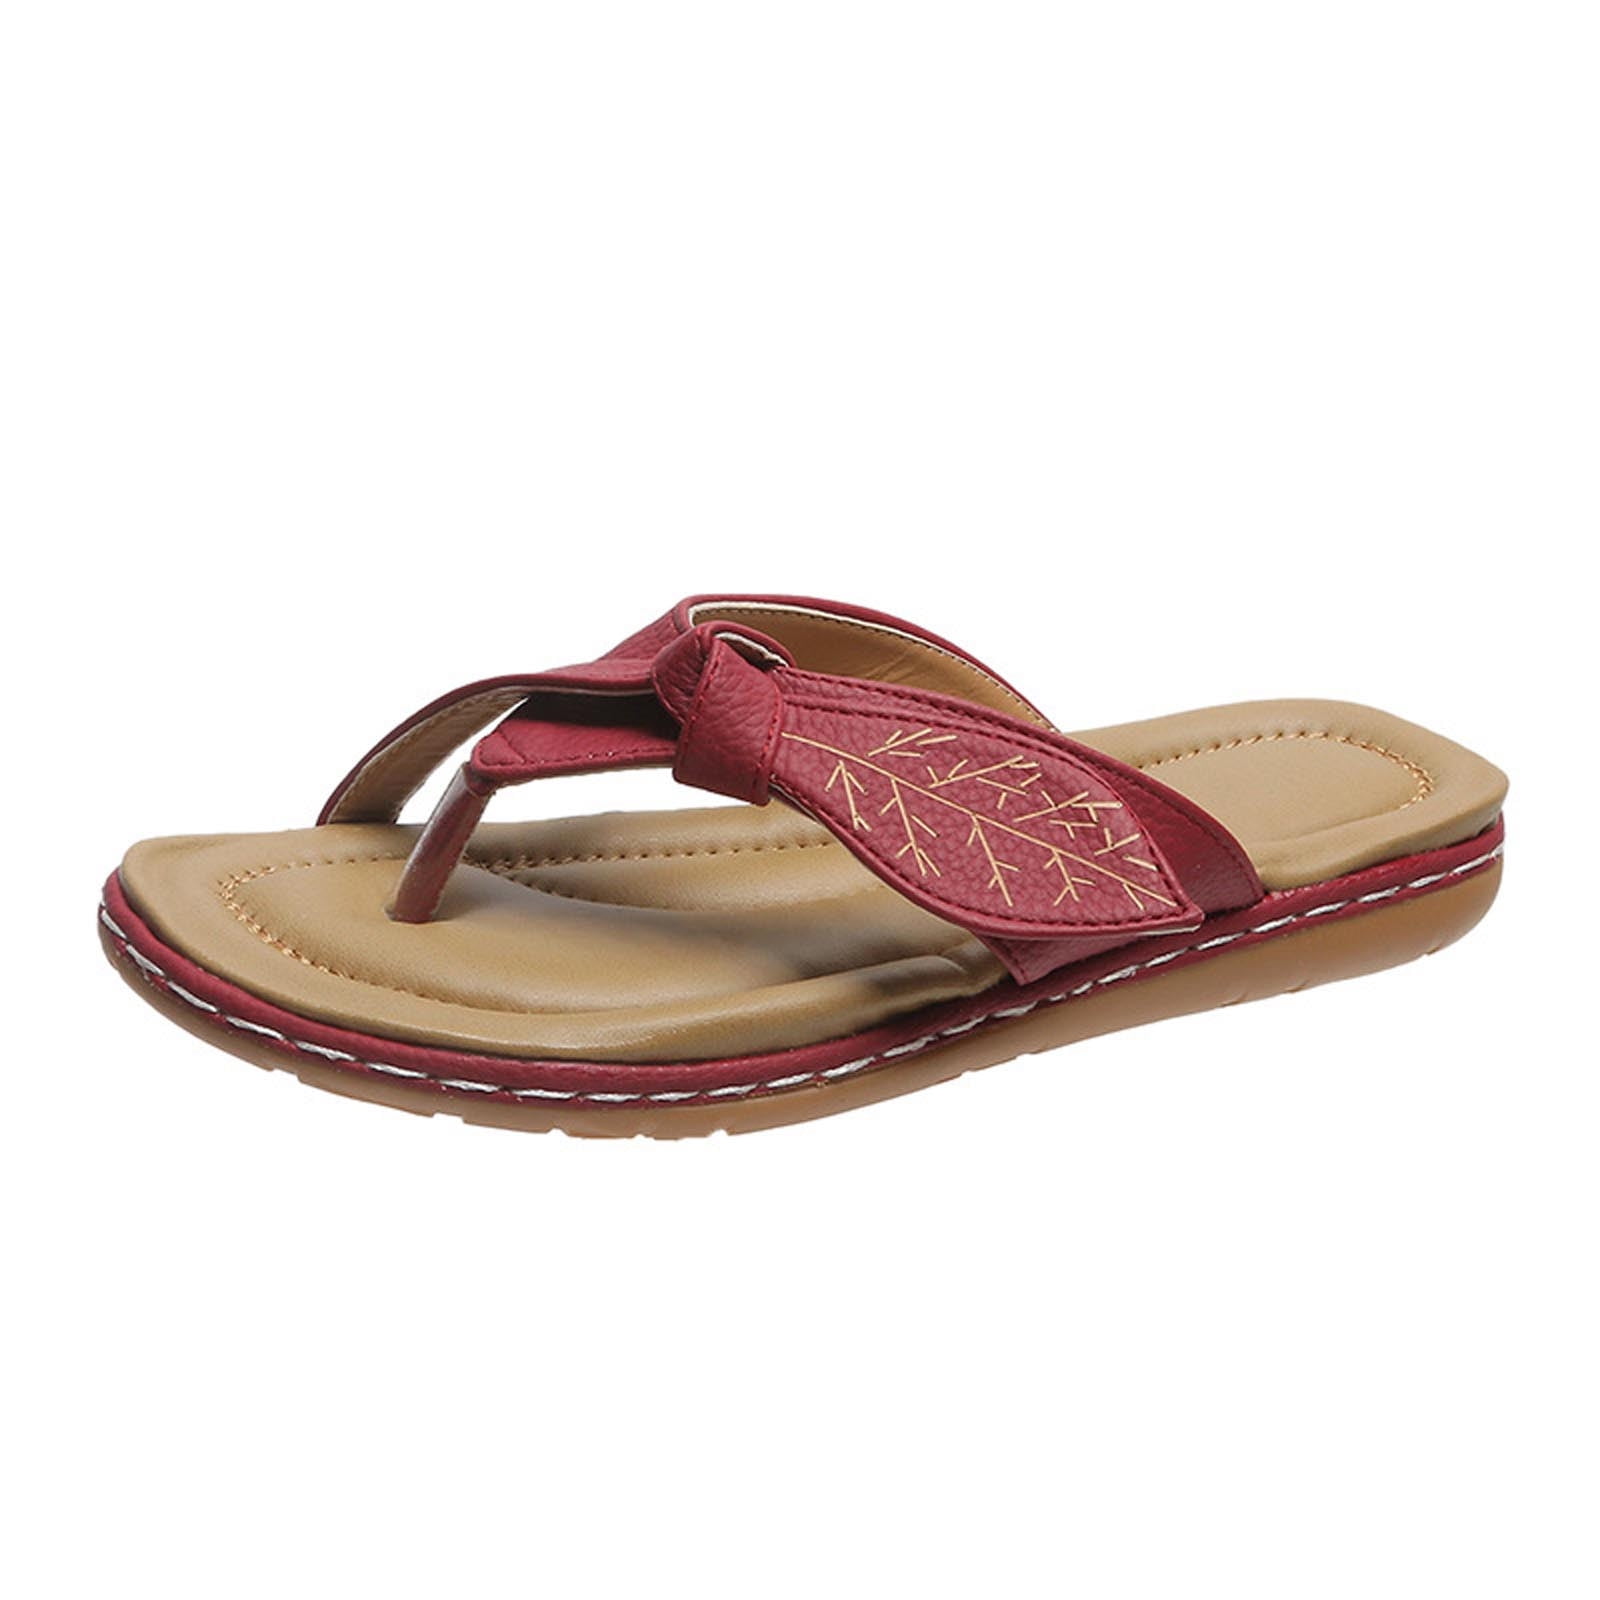 OAVQHLG3B Women's Slippers Summer Flip Flops Flats Beach Shoes Sandals ...